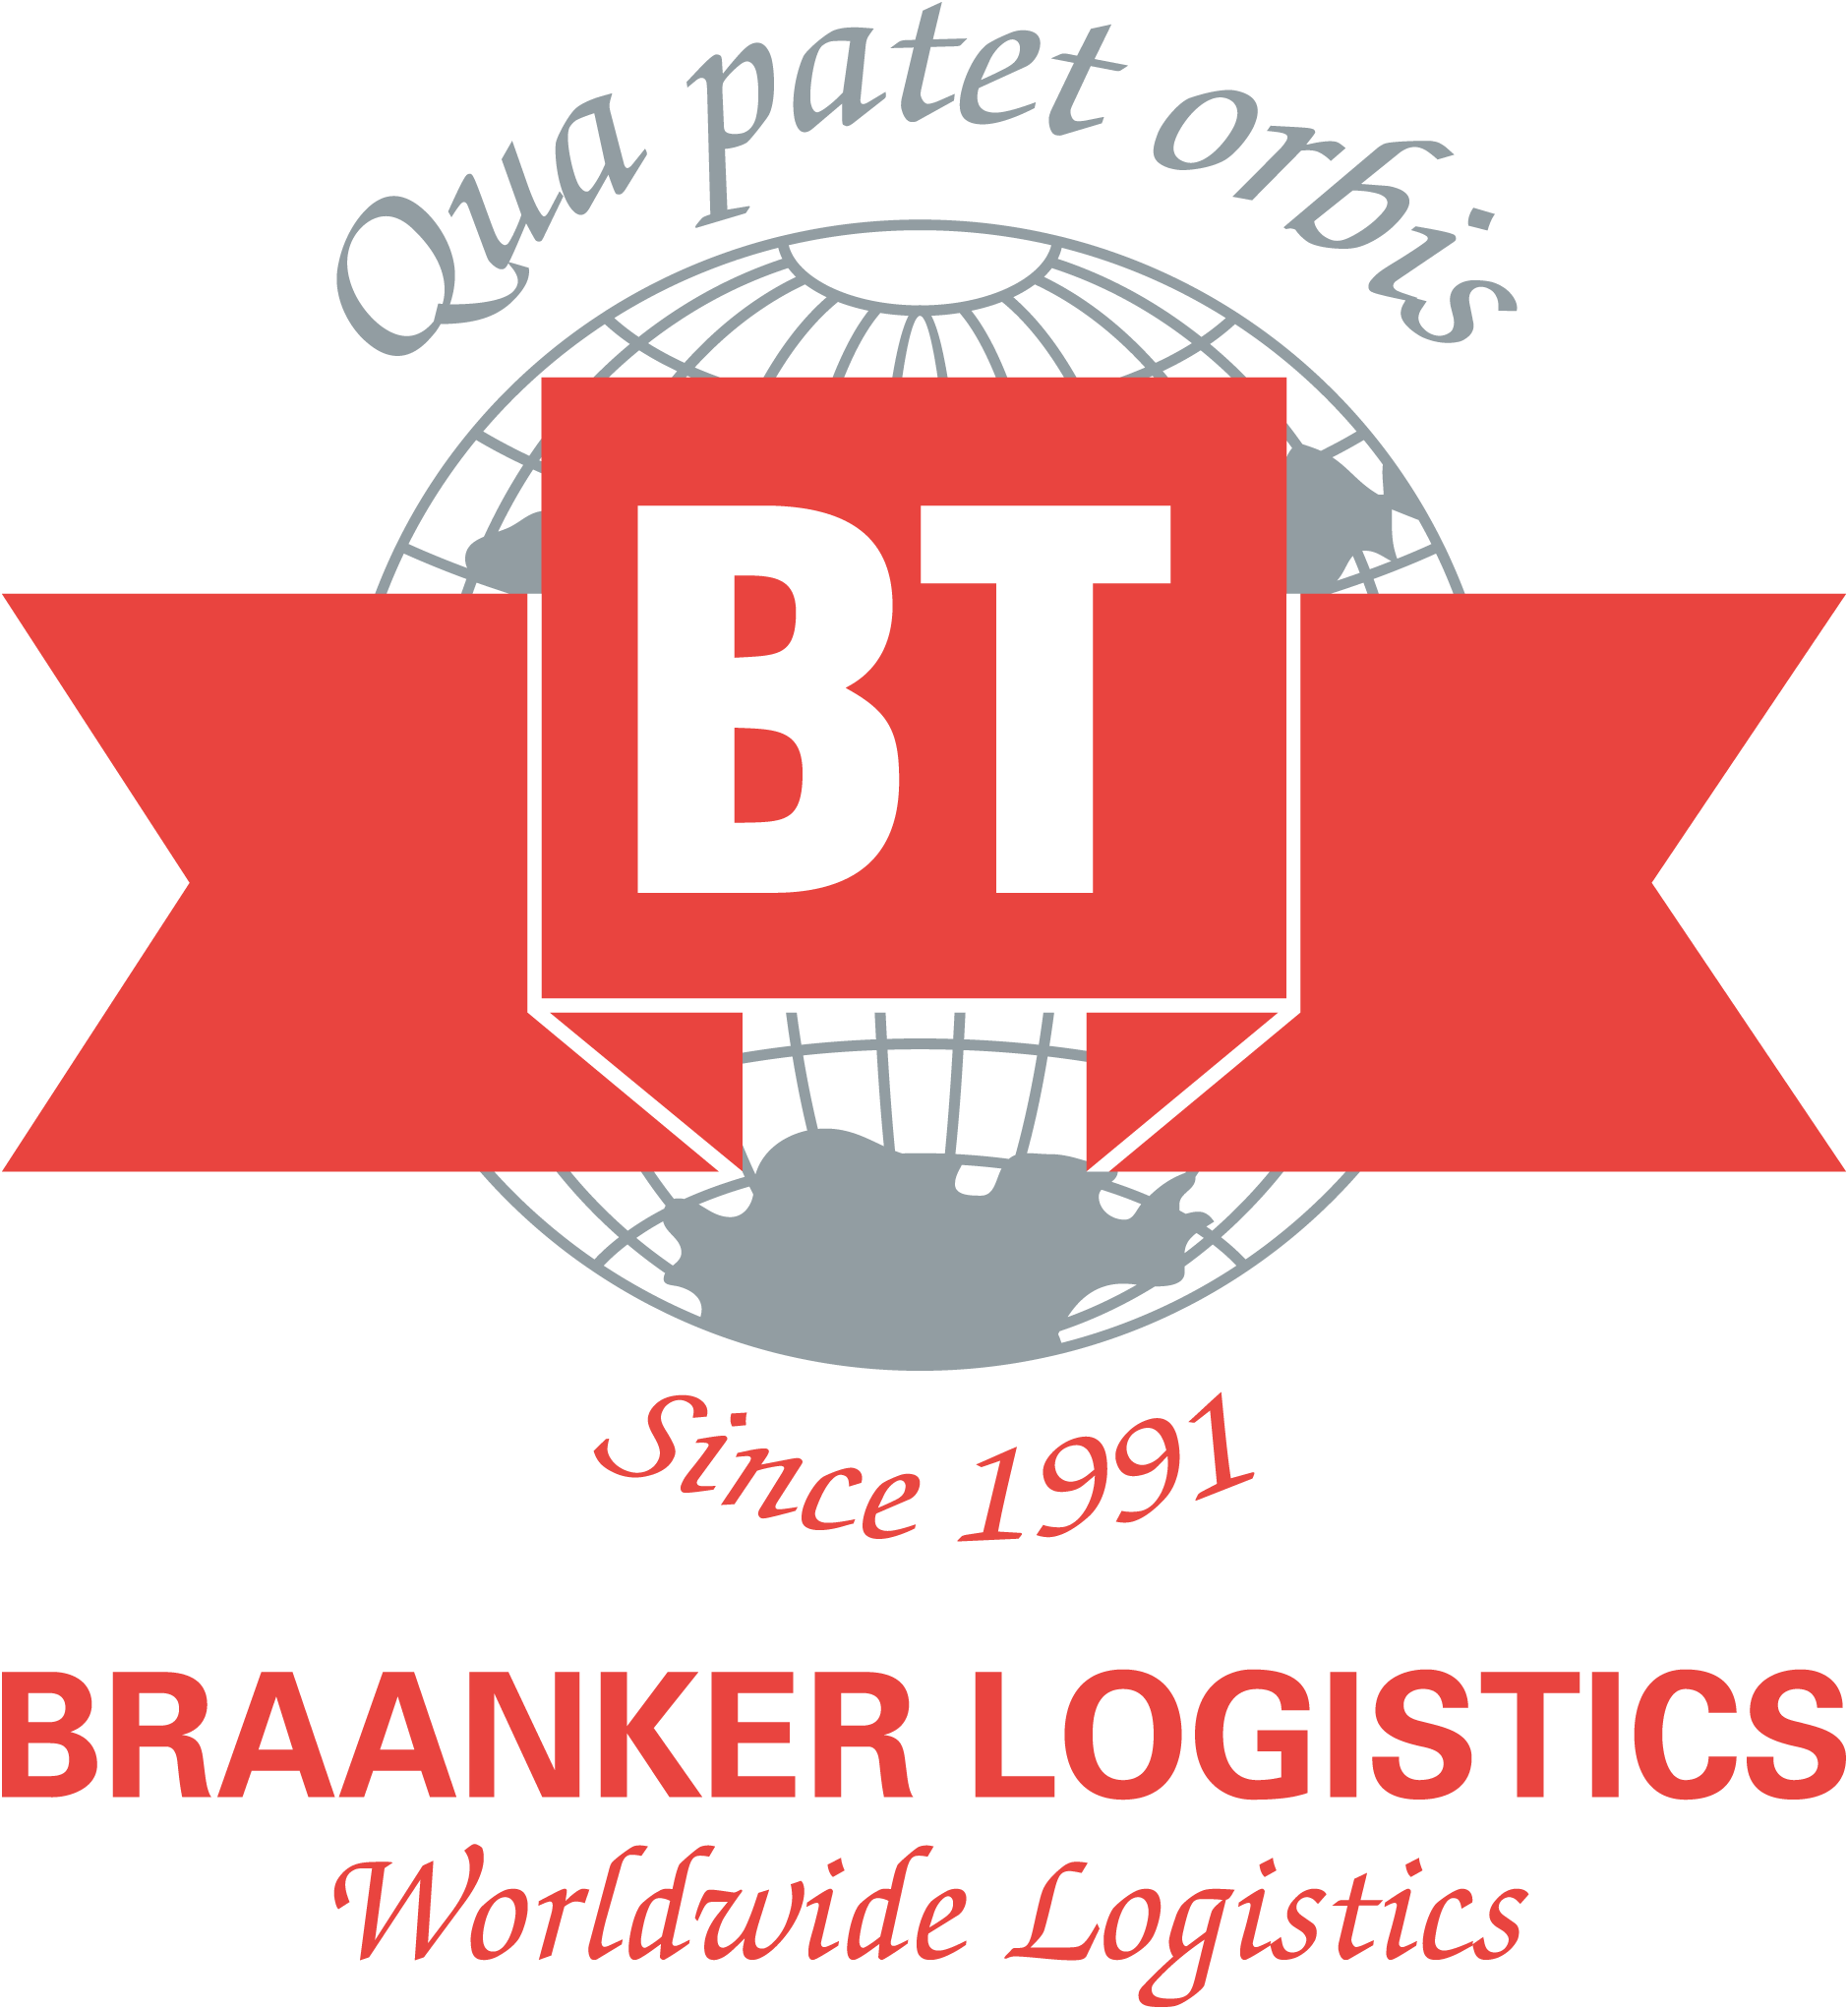 Braanker Logistics